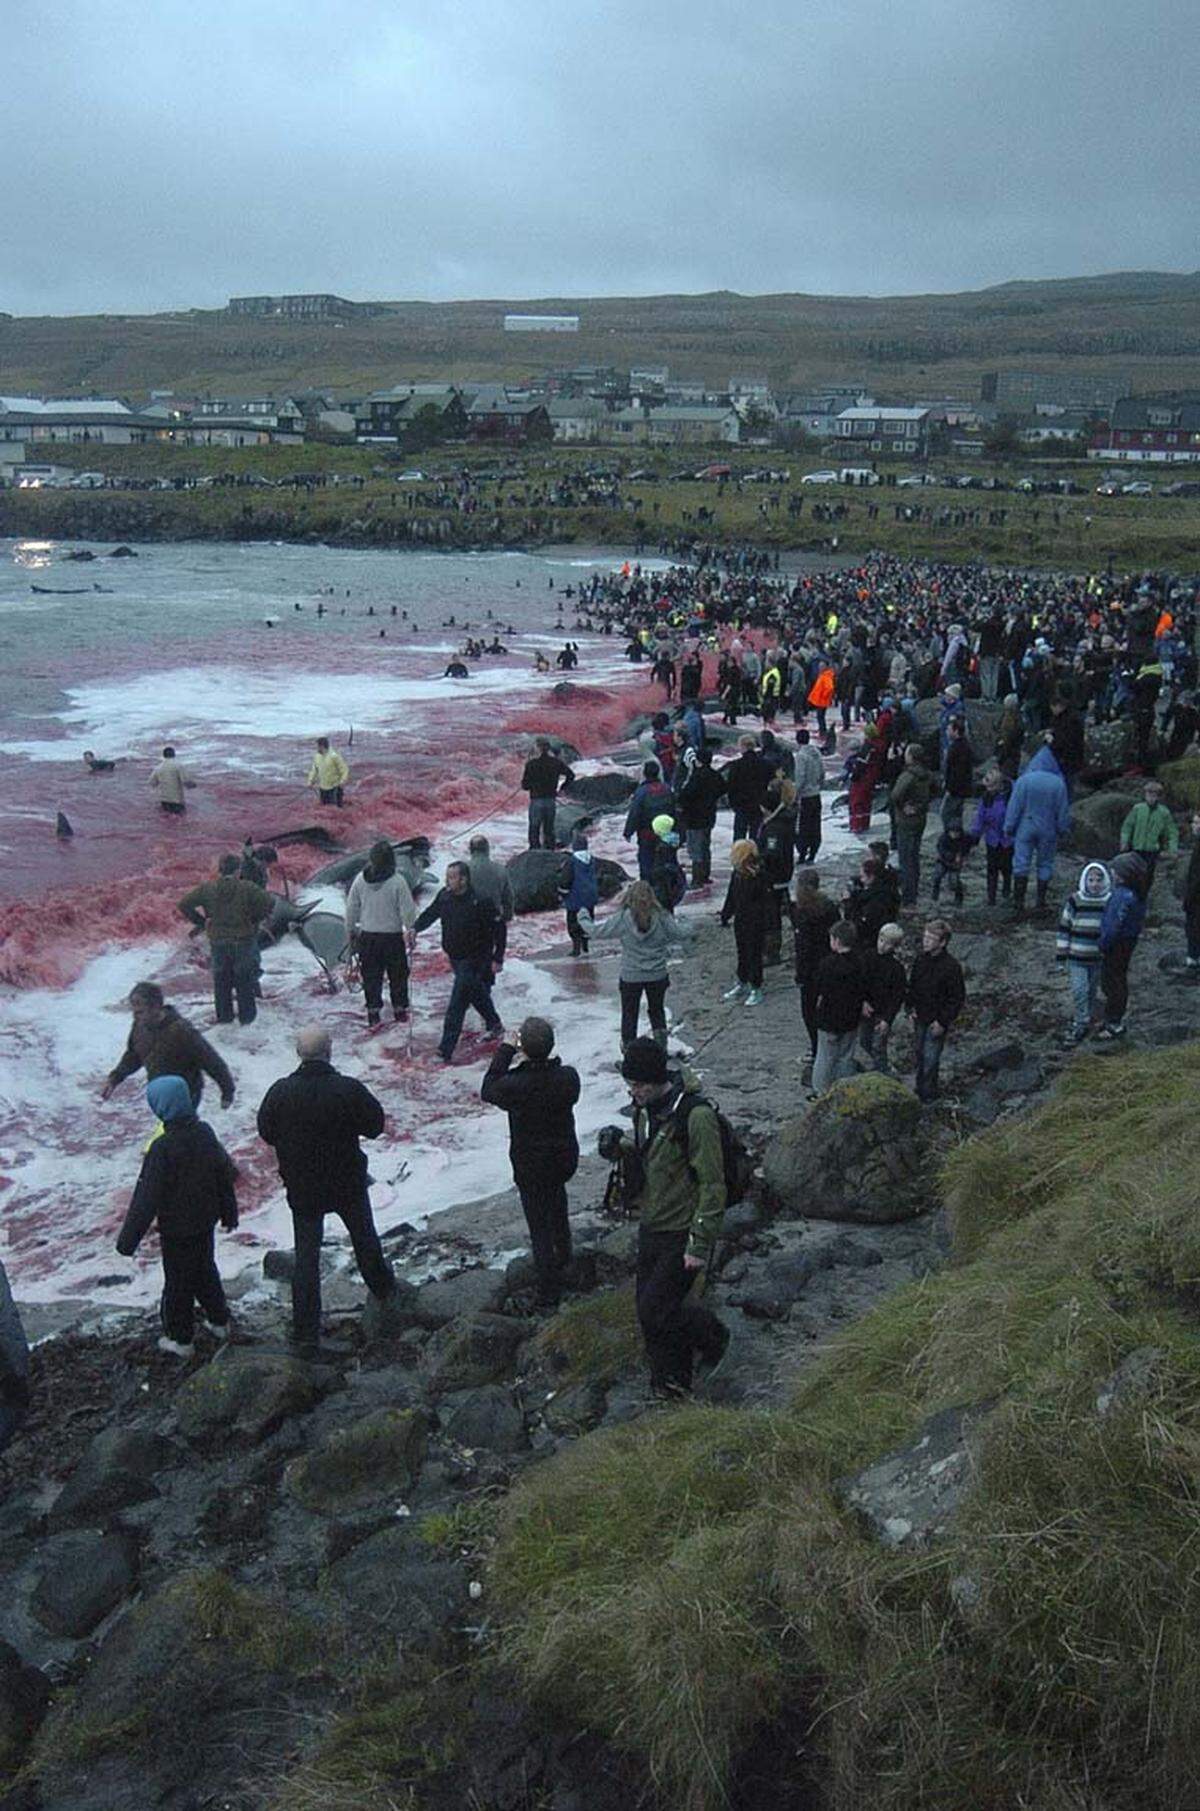 Geben die Behörden grünes Licht, wird das im Radio bekanntgegeben - der "Grindaboð", der Ruf zur Jagd, erklingt. Viele Färinger lassen heute noch alles liegen und stehen und kommen in eine der 17 gesetzlich festgelegten Buchten, um sich einen Teil des Walfleisches zu holen.